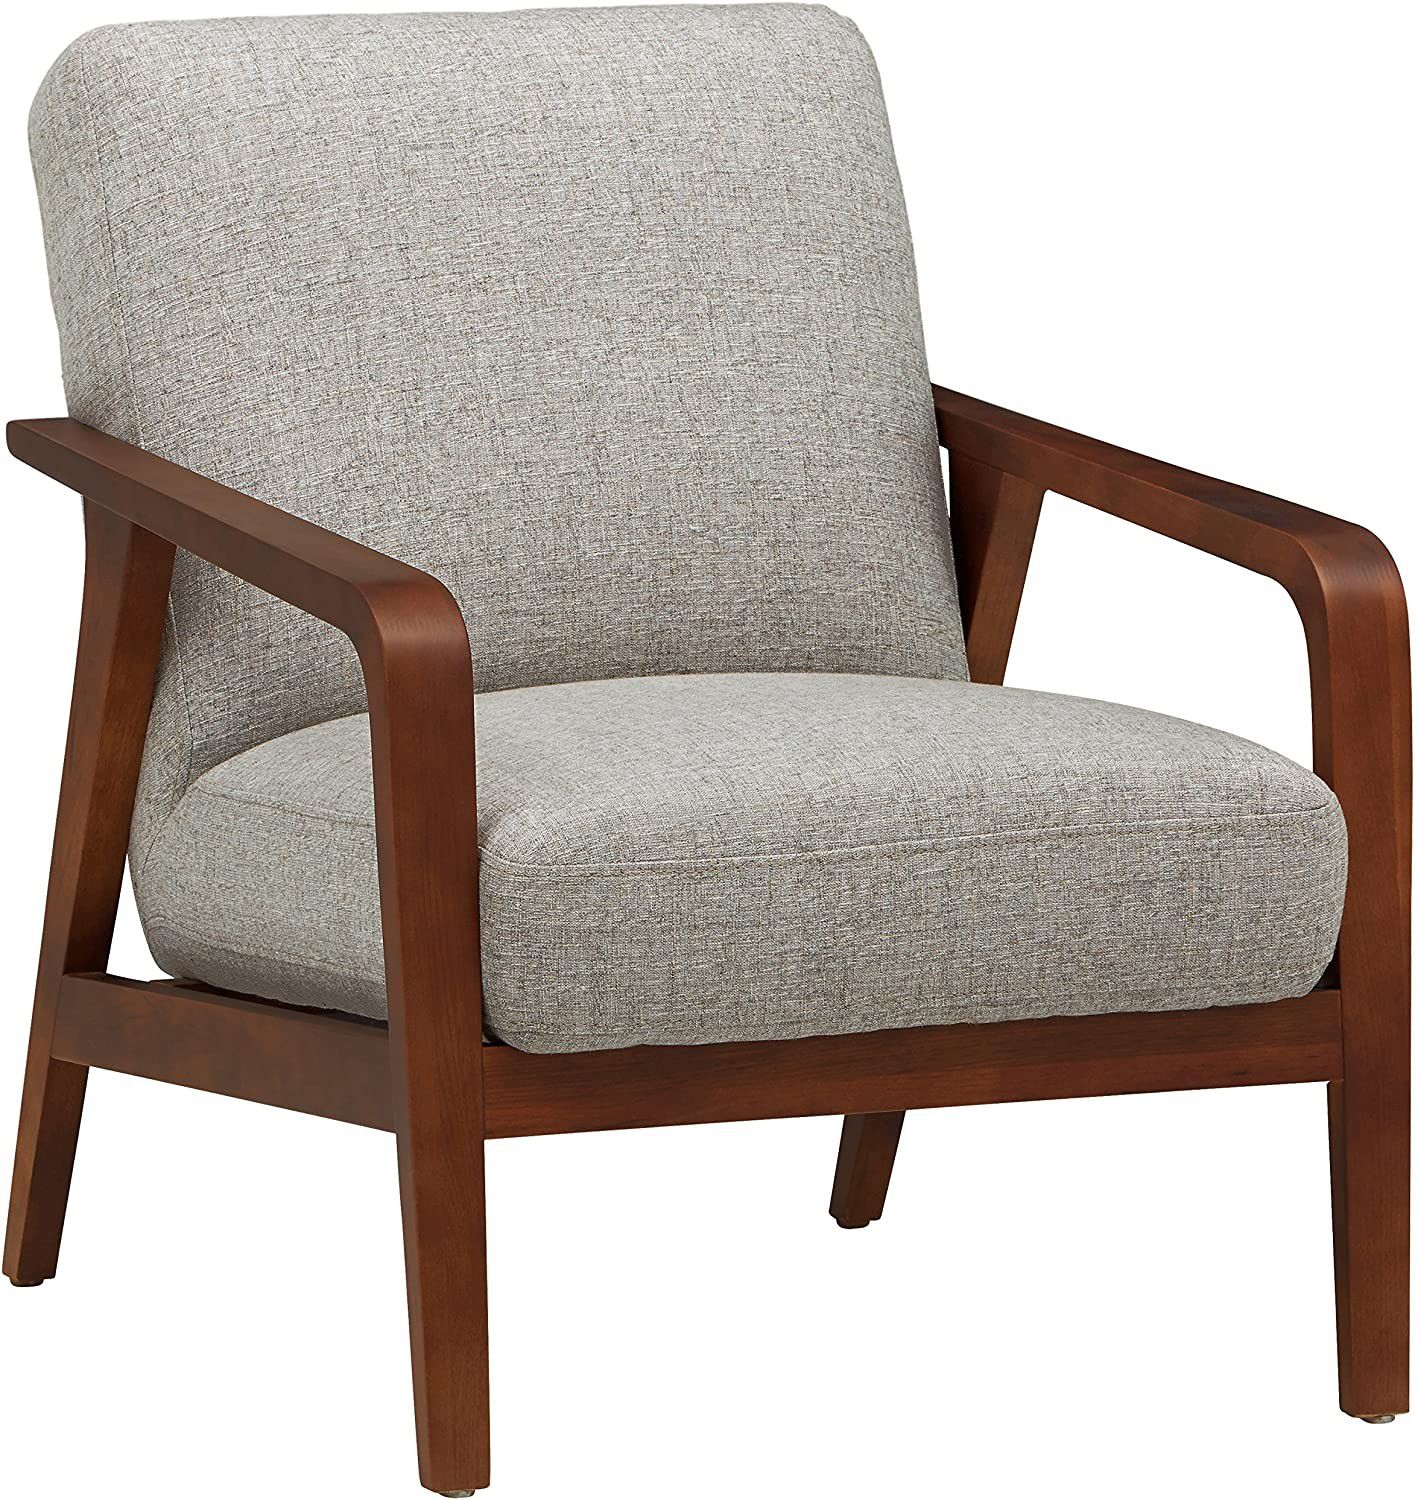 Modern Wooden Accent Chair, Light Gray